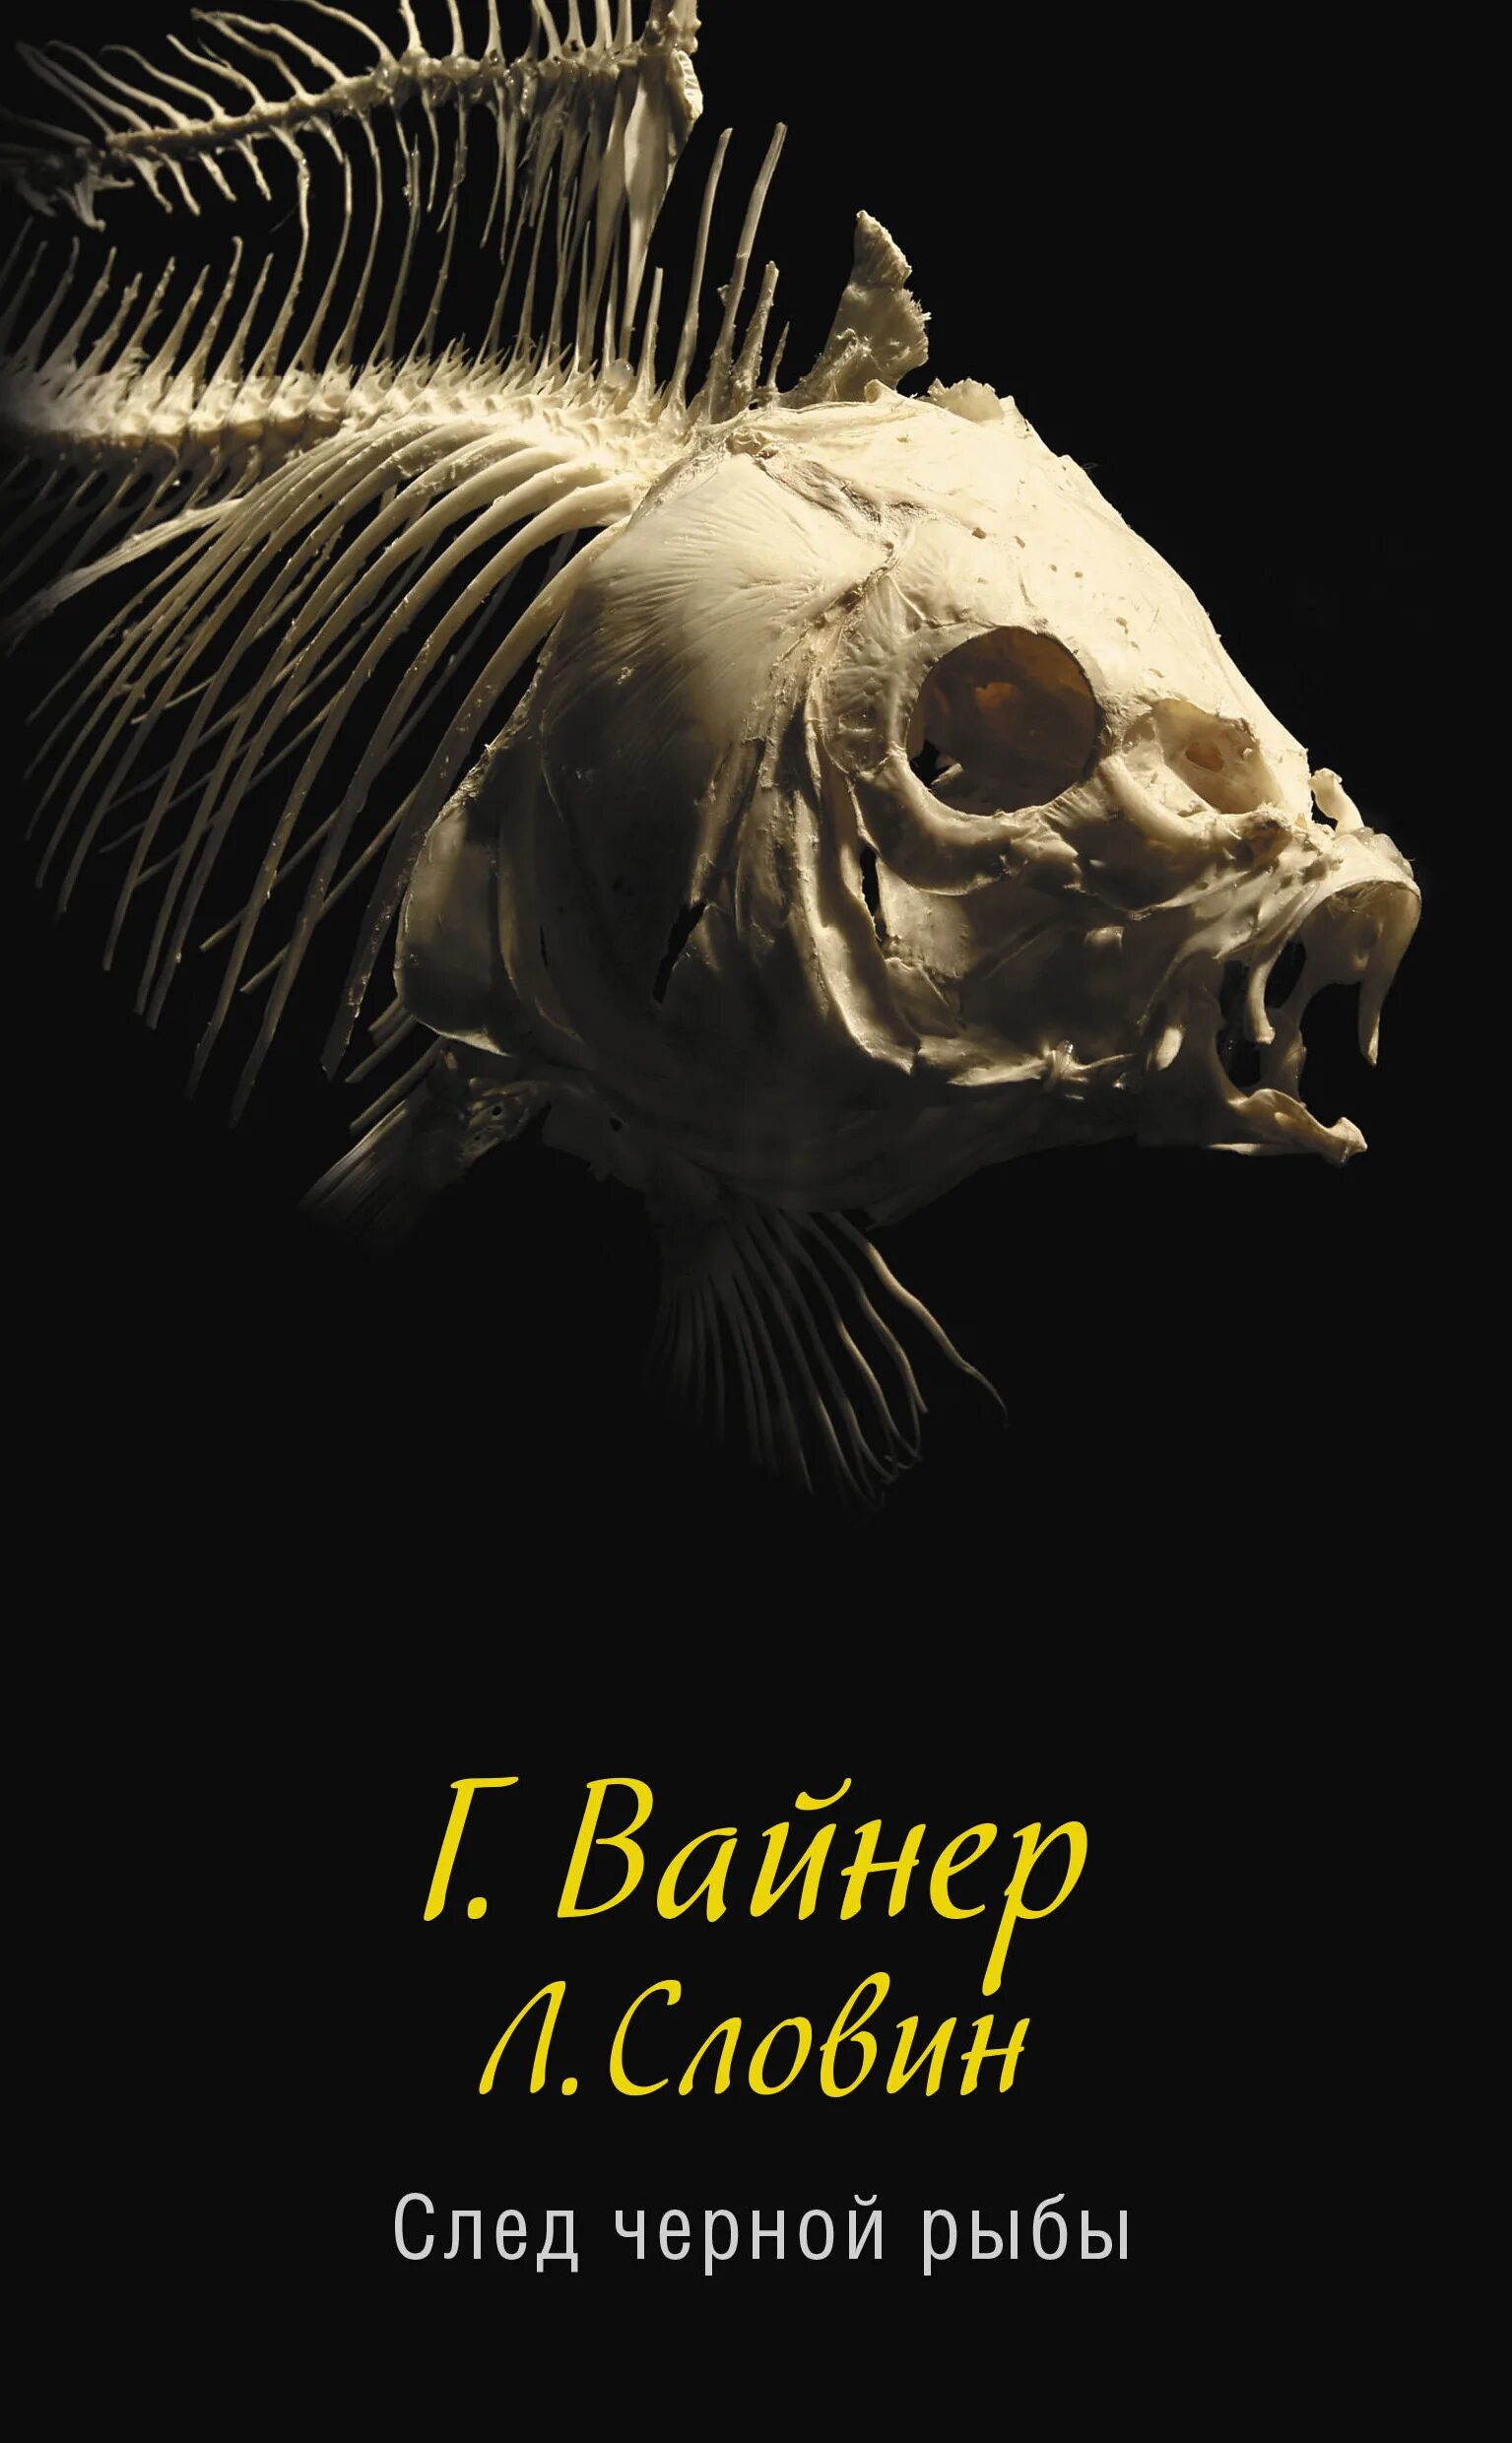 Рыба книги купить. След черной рыбы книга. Книга Вайнер след черной рыбы.